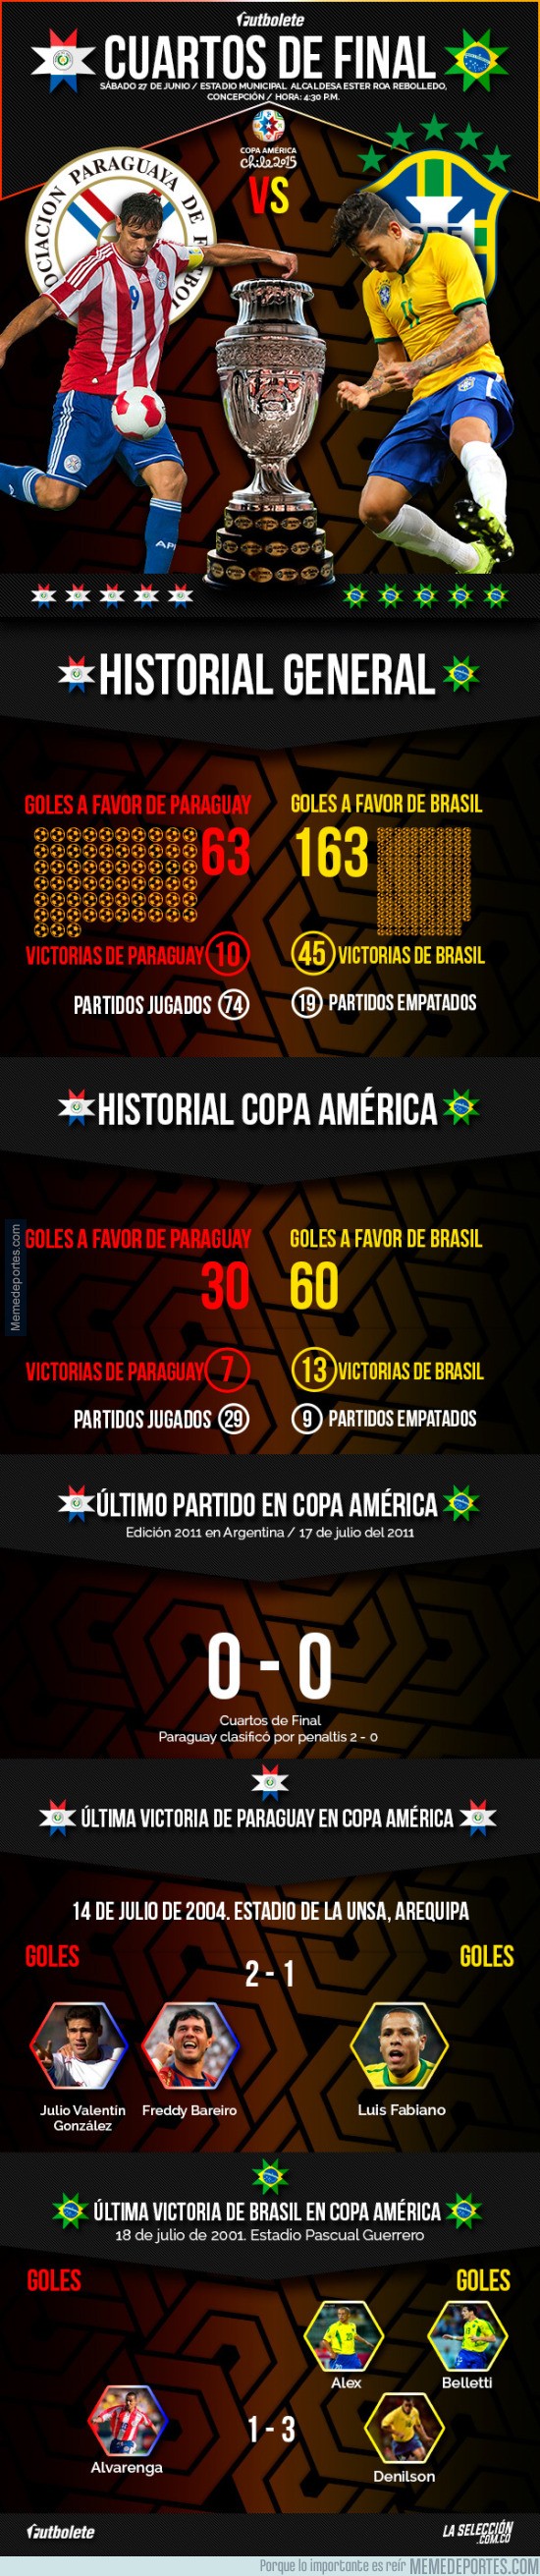 603921 - Historial Paraguay vs Brasil